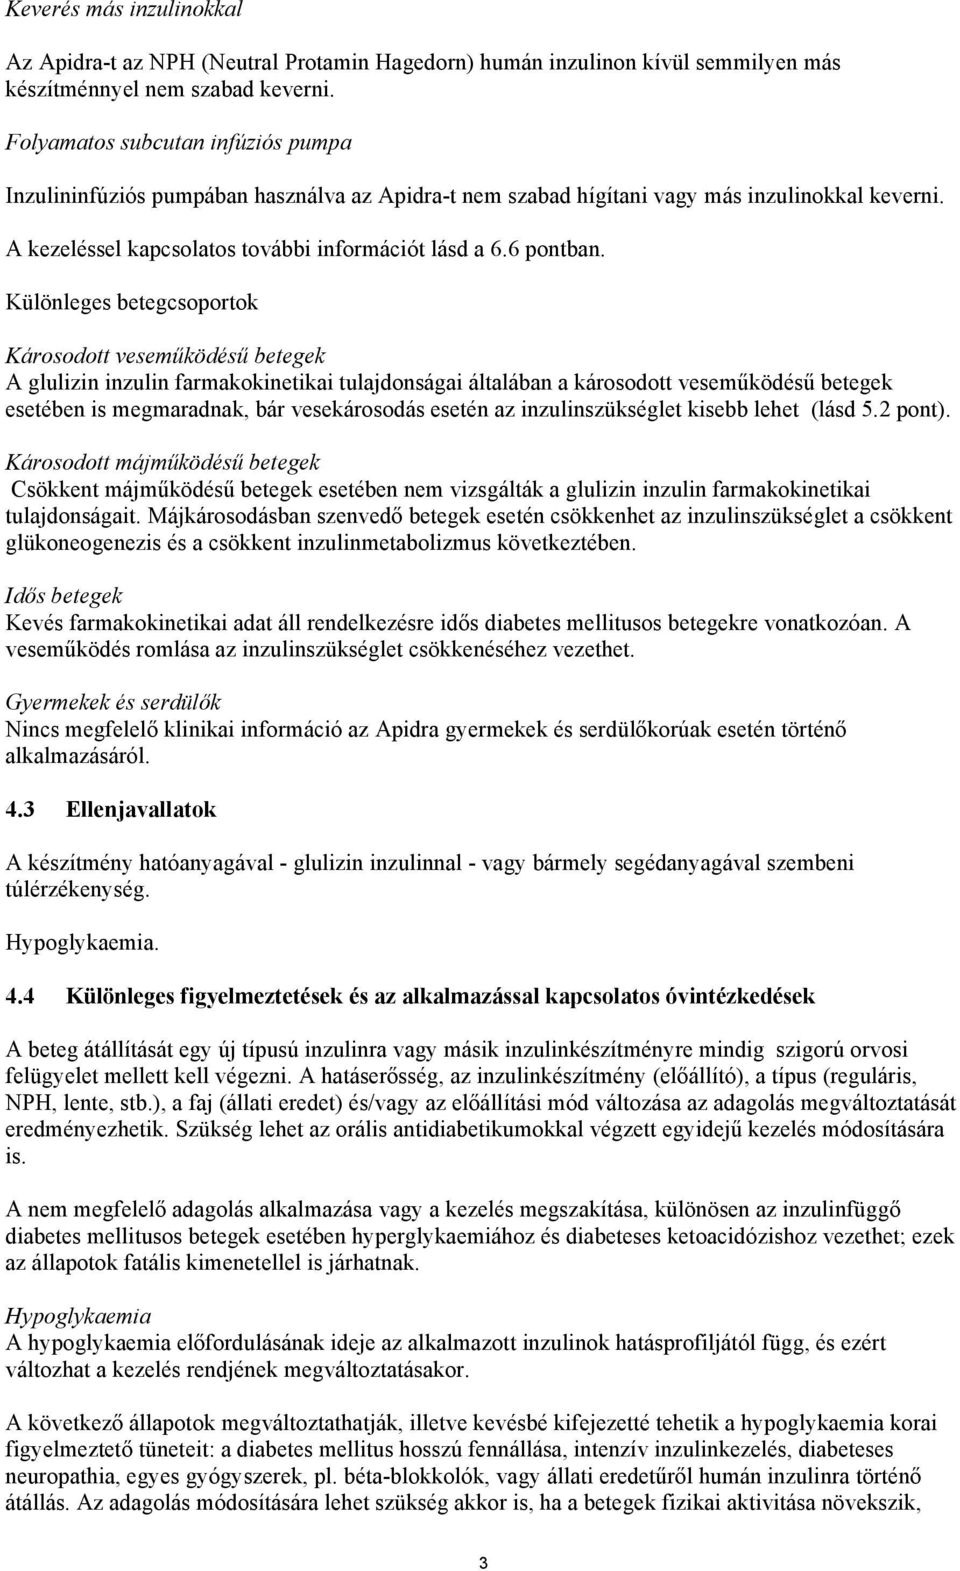 az inzulinfüggő cukorbetegség kezelésére vonatkozó szabványok)